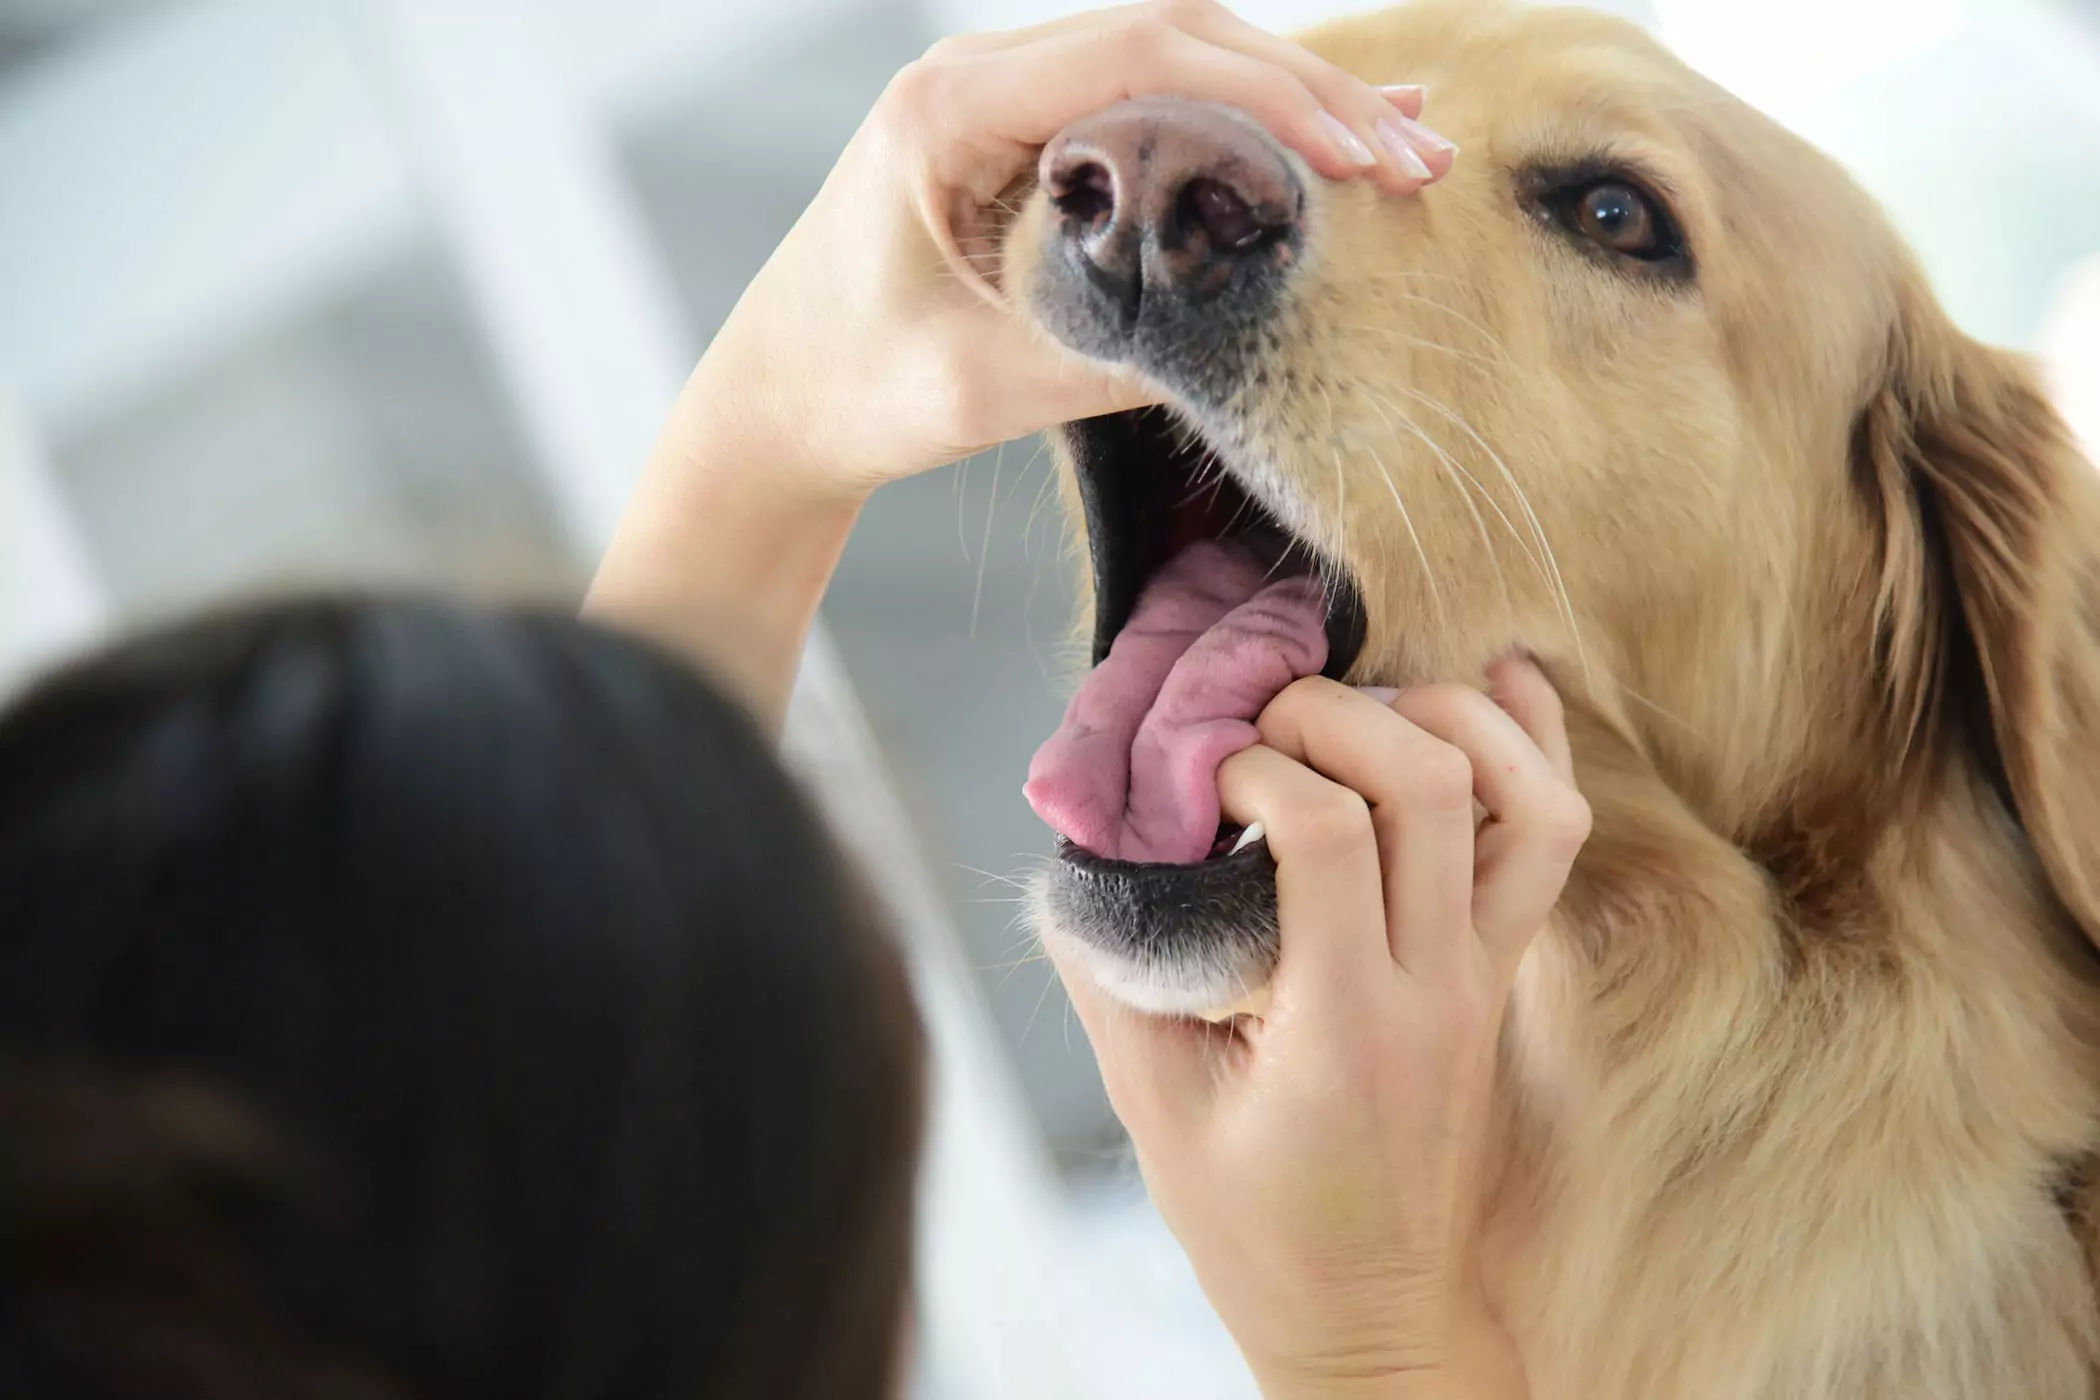 A boca de um cão é mais limpa do que a de um humano? A boca de um cachorro é mais limpa que a de um humano? Este é um conceito roubado, os dois não são comparáveis